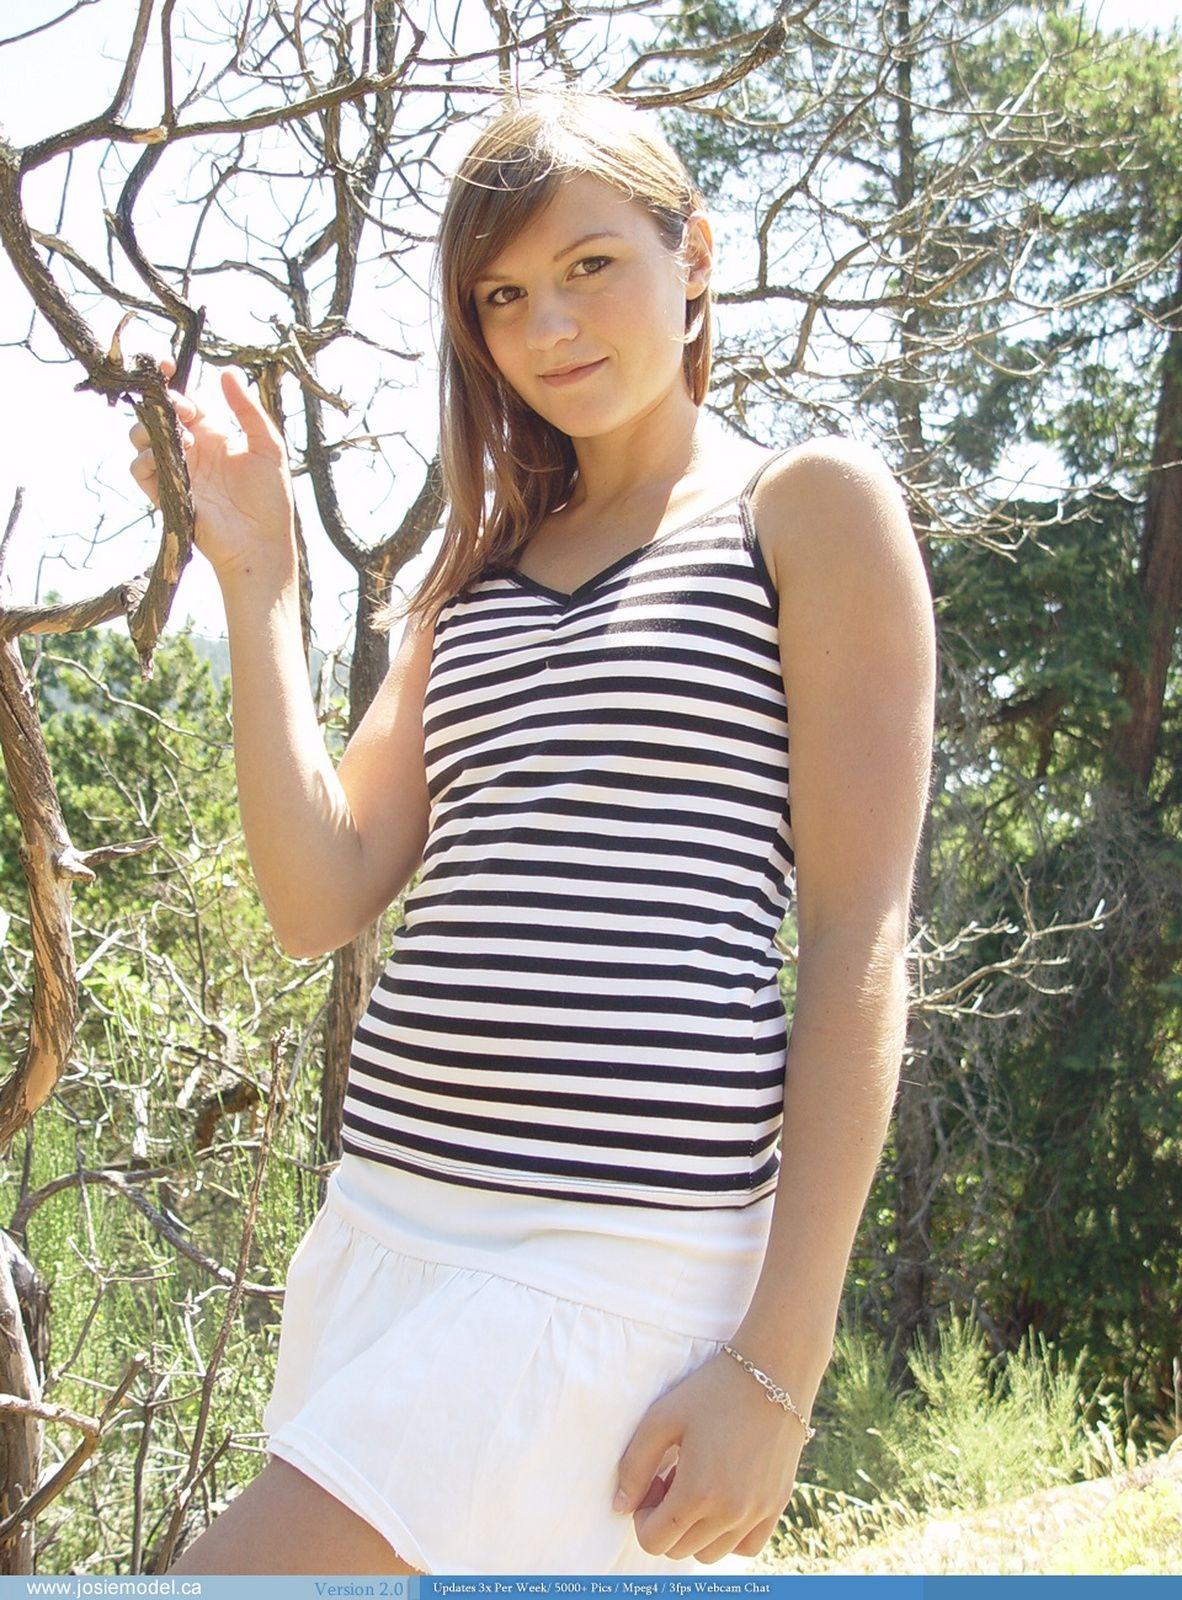 Bilder von teen hottie josie modell zeigt ihre hotness draußen
 #55697072